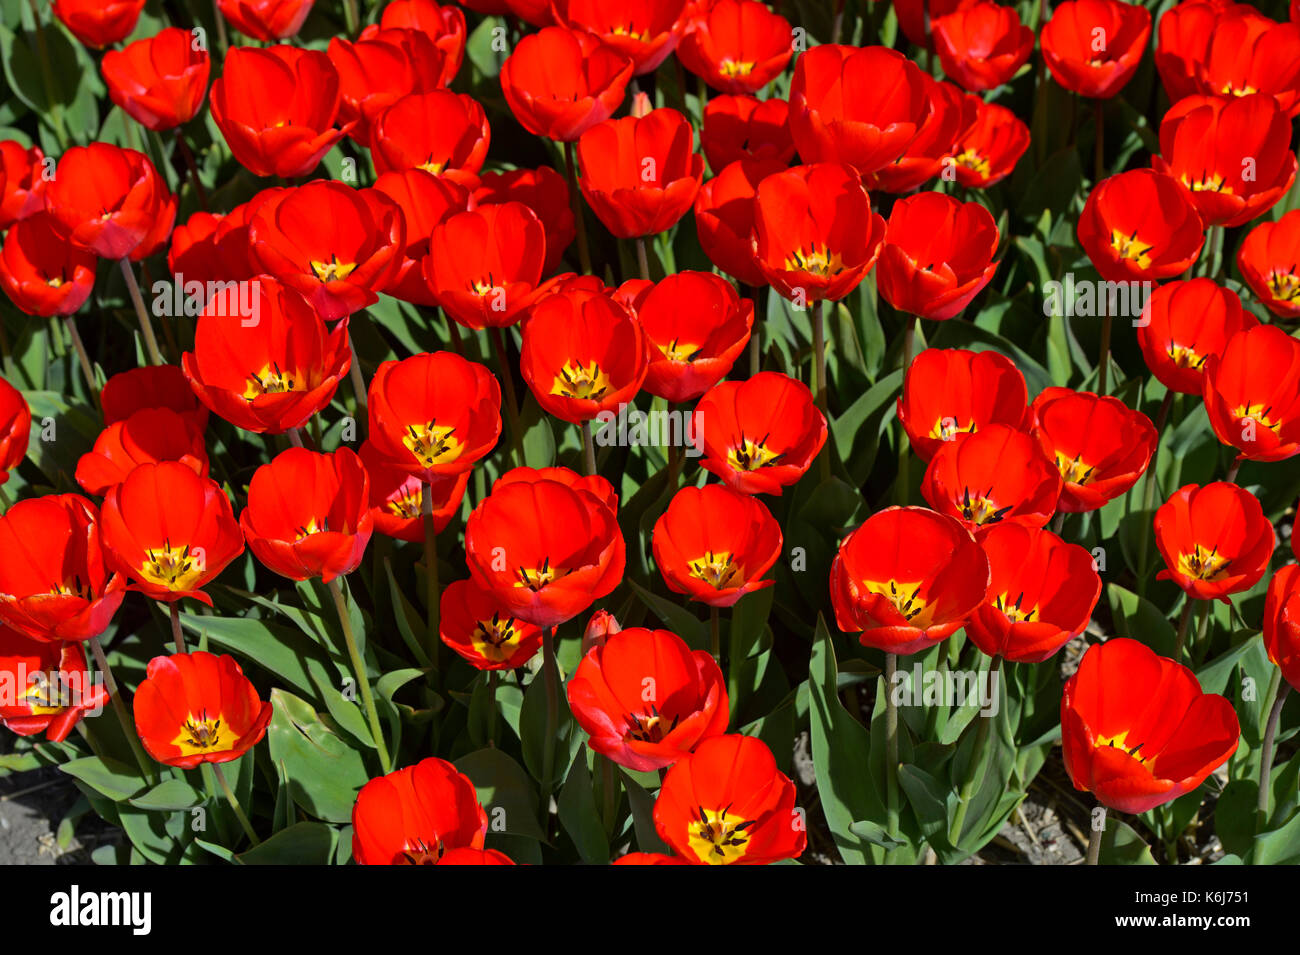 Field with red tulips in the area of Bollenstreek, Noordwijkerhout, Netherlands Stock Photo